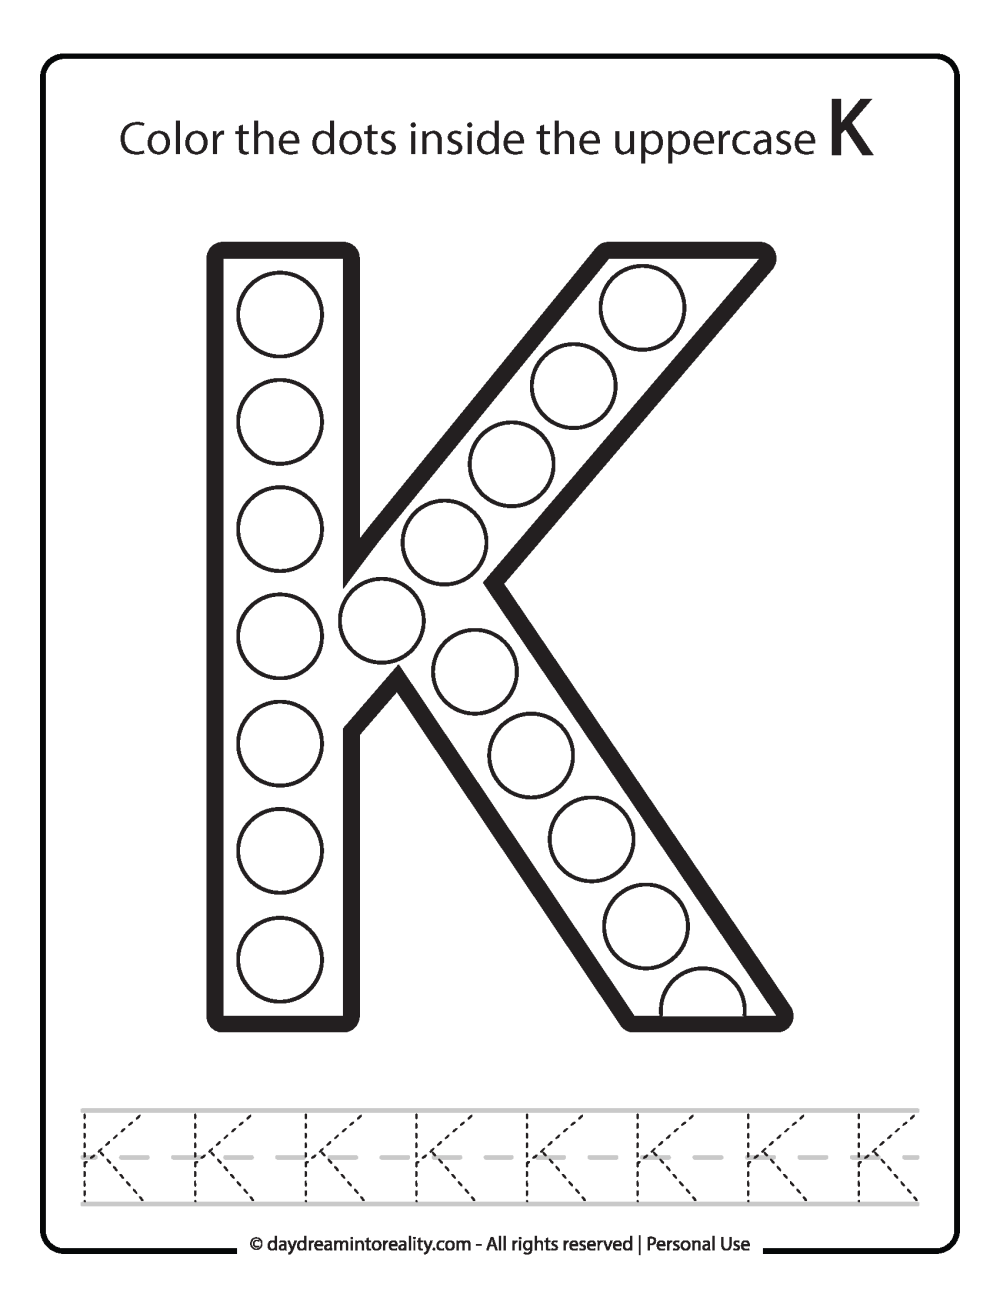 Uppercase "K" Dot Marker Worksheet Free Printable activity for kids (preschool, kindergarten)